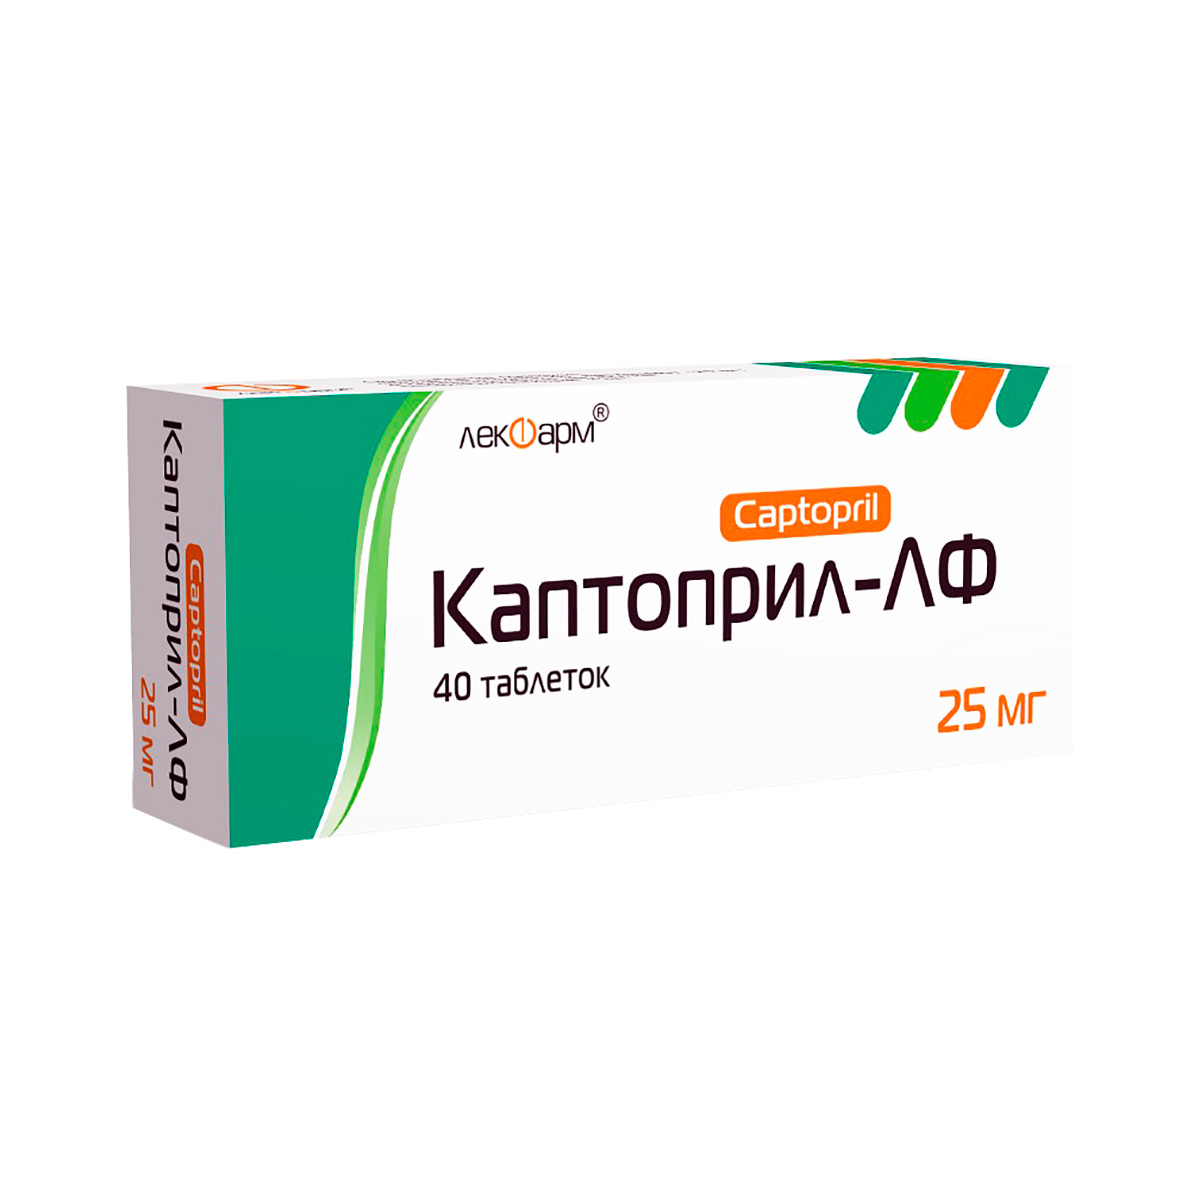 Каптоприл-ЛФ 25 мг таблетки 40 шт